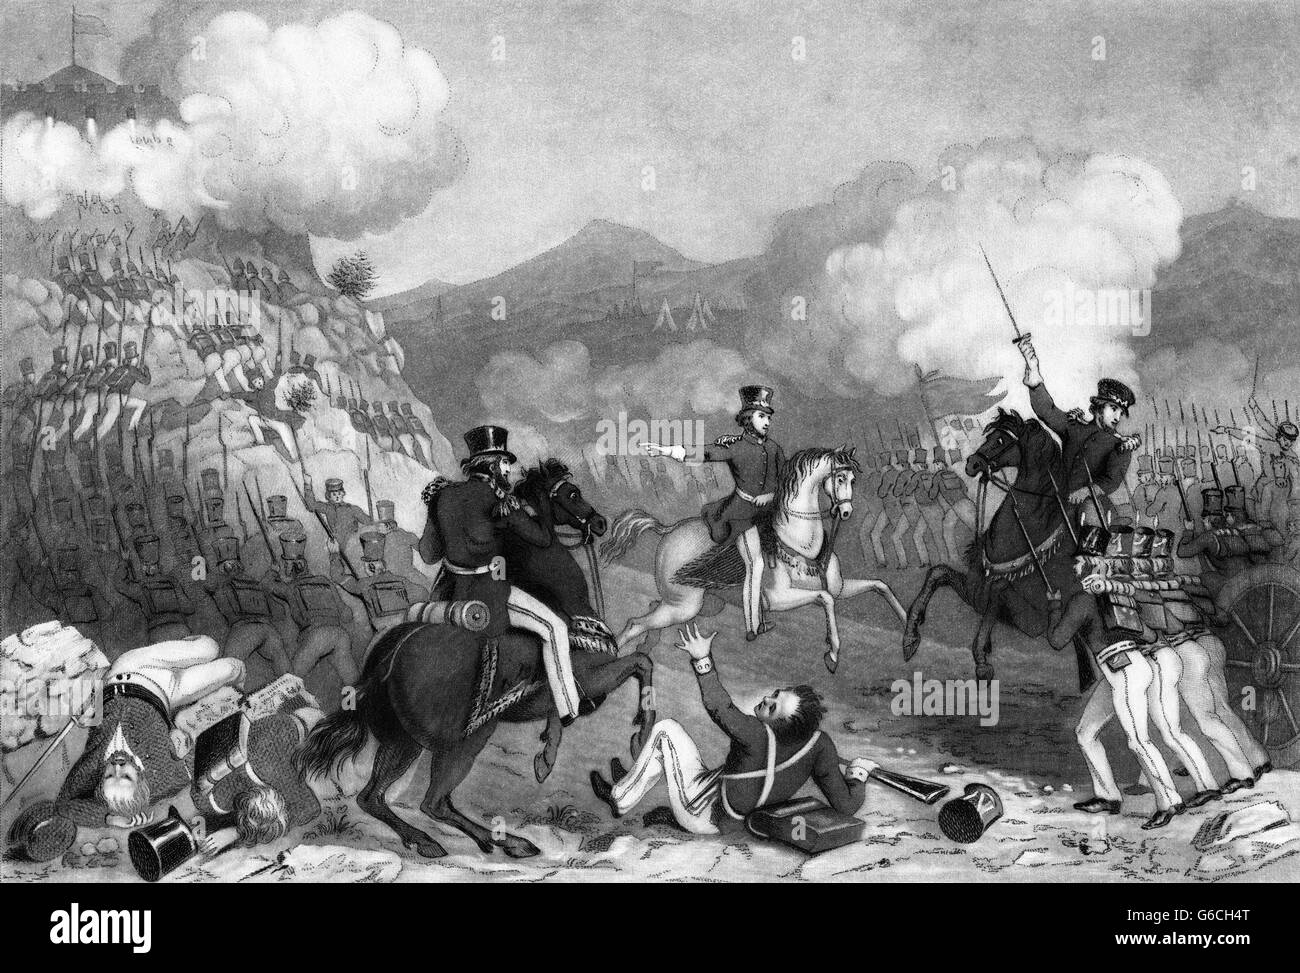 1840ER JAHRE SEPTEMBER 1847 AMERIKANISCHE TRUPPEN STÜRMEN PALACE HILL IN DER SCHLACHT VON CHAPULTEPEC MEXIKO-AMERIKANISCHER KRIEG Stockfoto